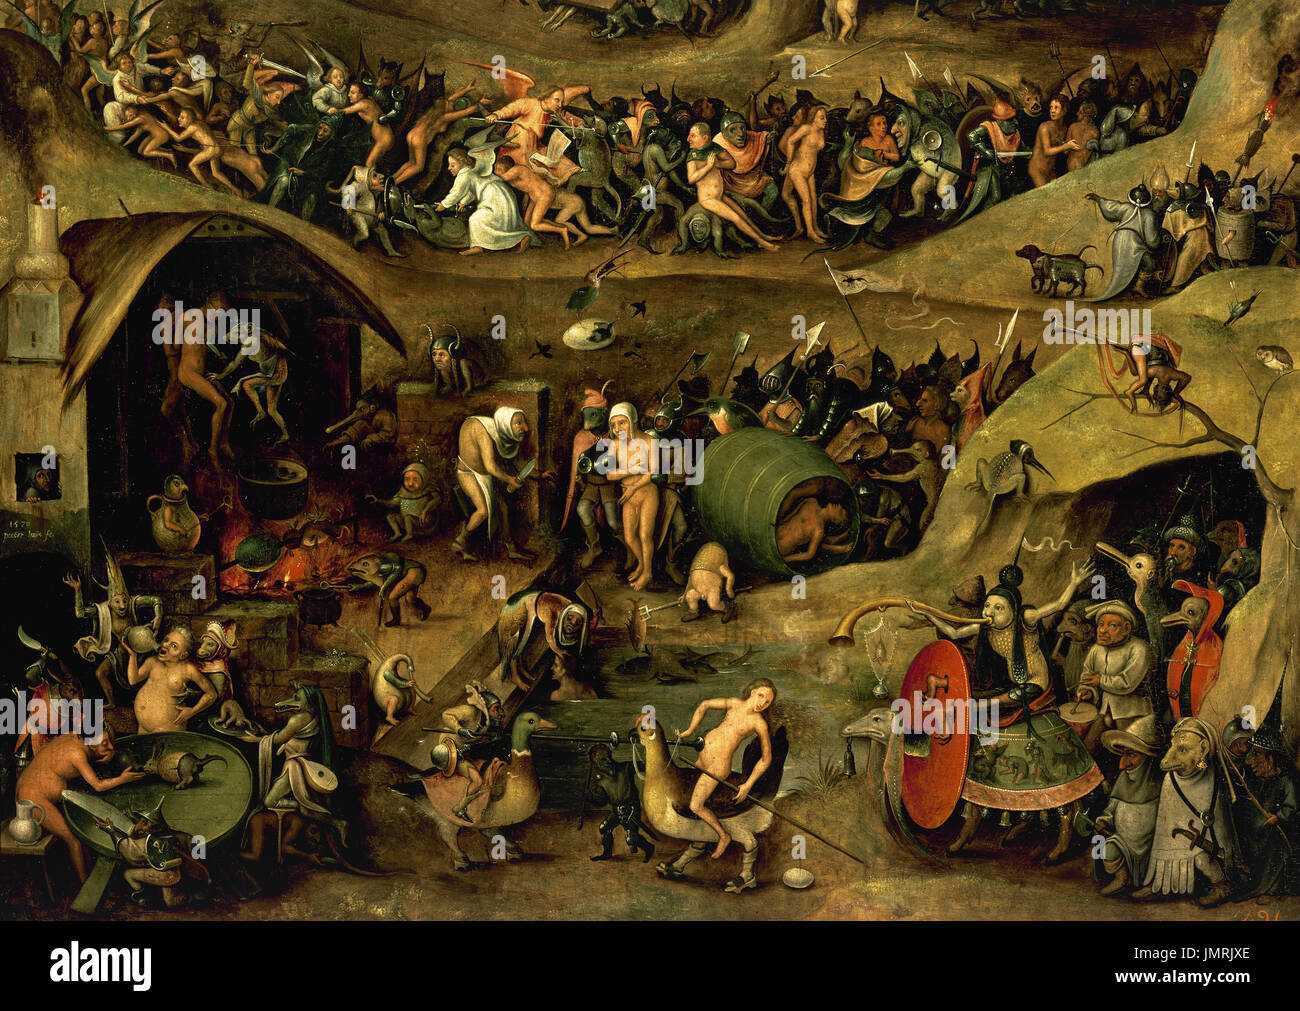 Pieter Huys (ca.1519-ca.1584). Flämischen Renaissance-Maler. Zum Teufel, 1570. Kampf der Engel, Dämonen und höllische Qualen. Prado-Museum. Madrid. Spanien. Stockfoto